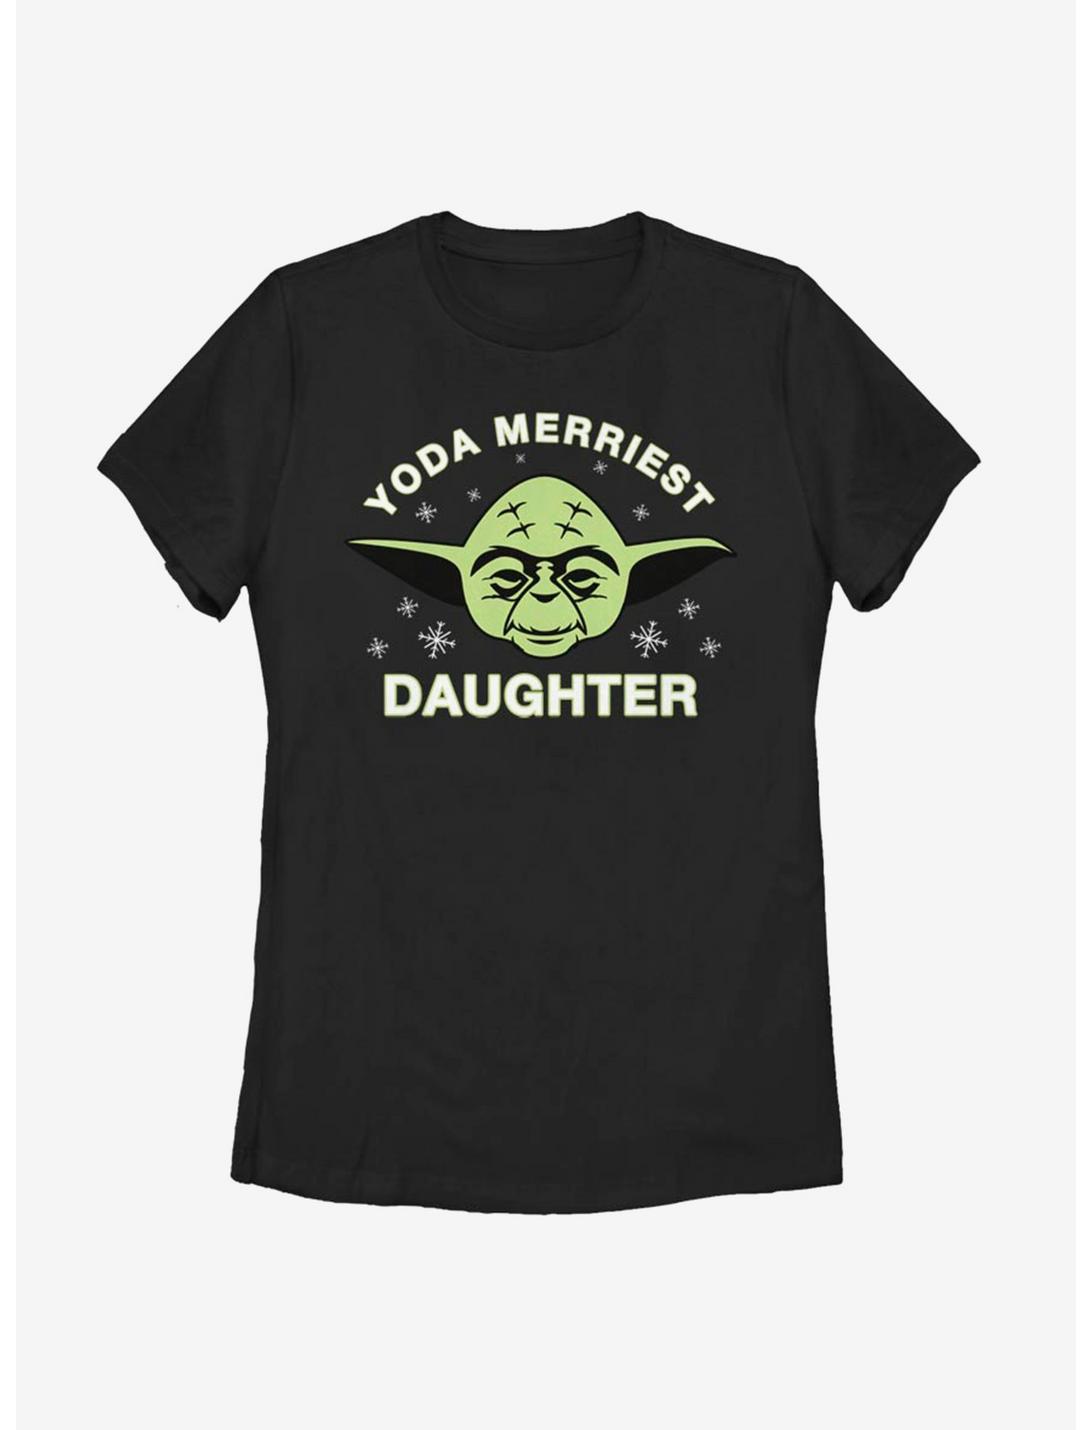 Star Wars Yoda Merriest Daughter Womens T-Shirt, BLACK, hi-res